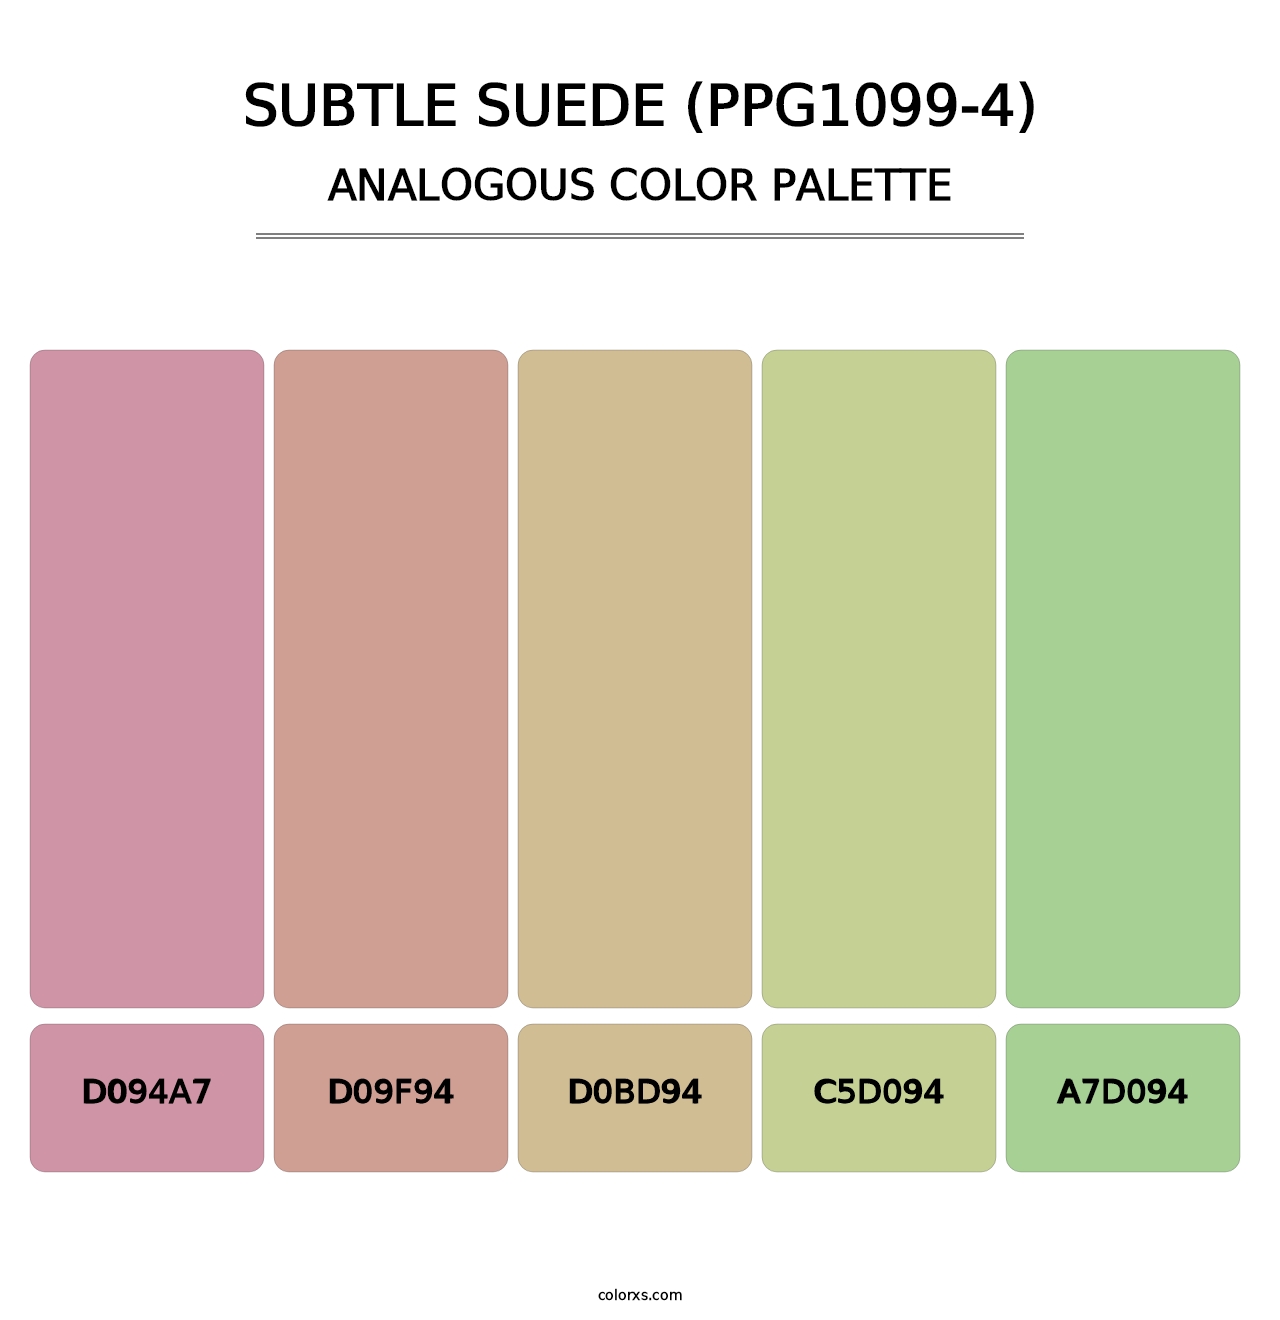 Subtle Suede (PPG1099-4) - Analogous Color Palette